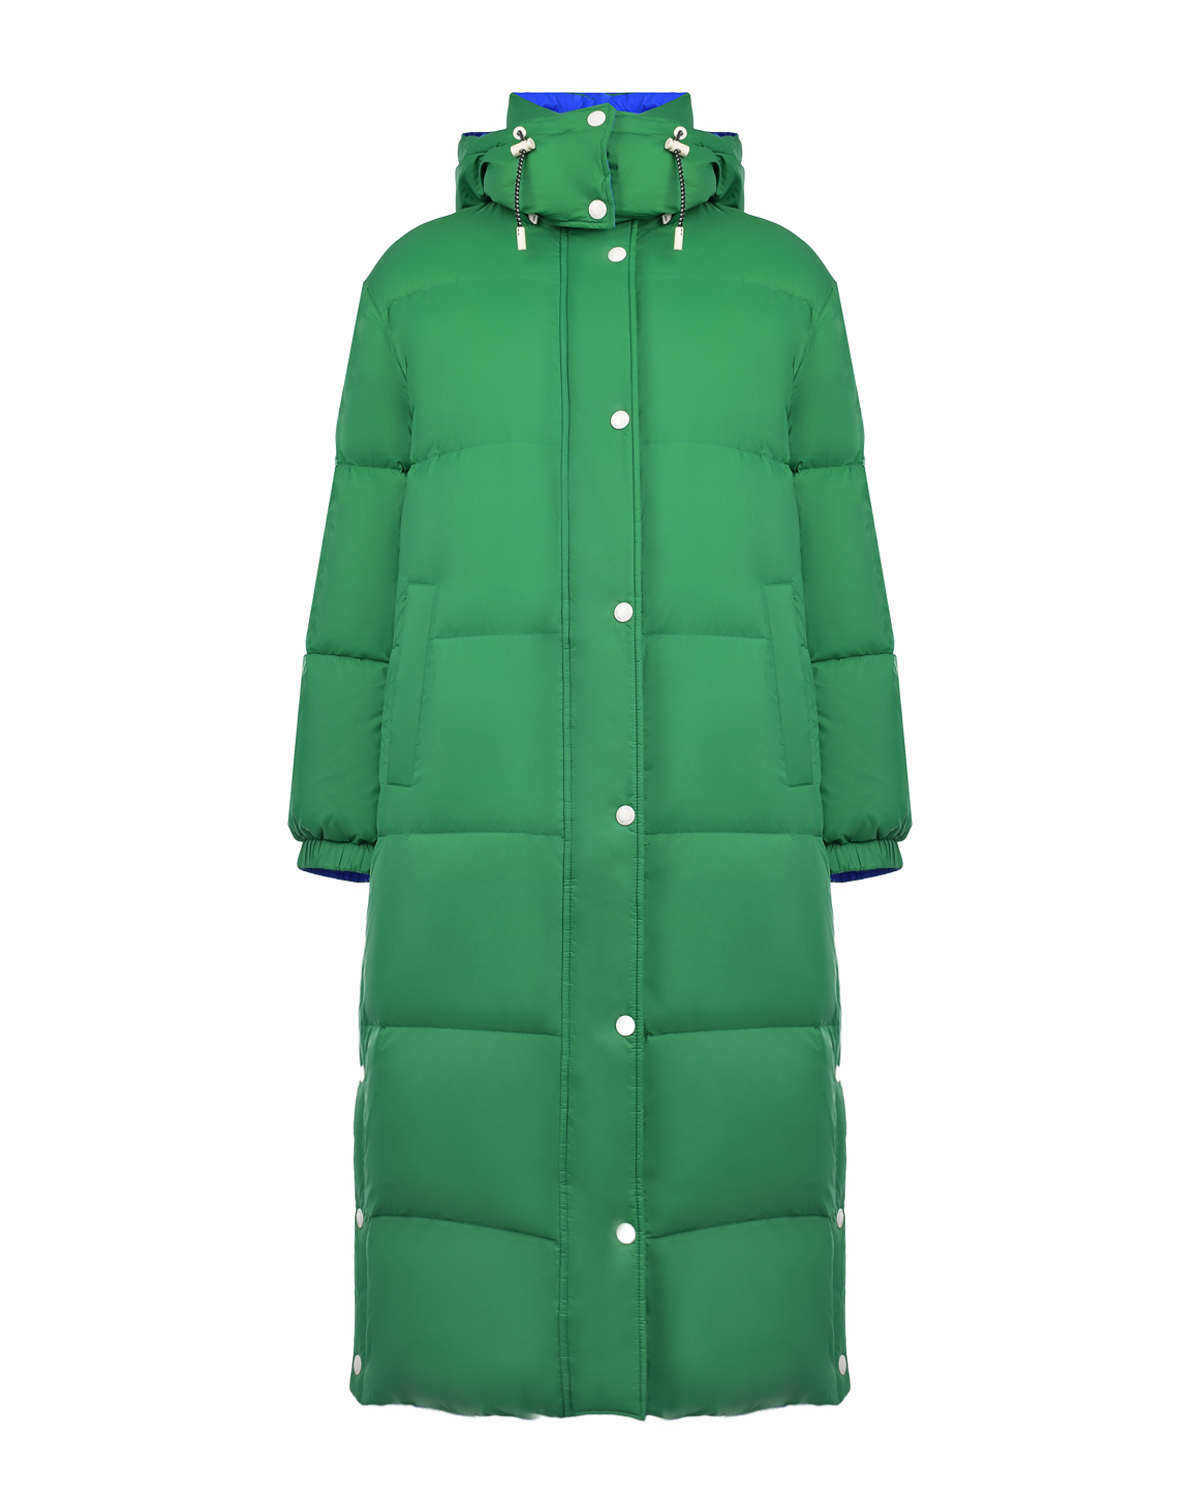 Двухстороннее пальто-пуховик, синий/зеленый Yves Salomon, размер 36, цвет нет цвета Двухстороннее пальто-пуховик, синий/зеленый Yves Salomon - фото 1